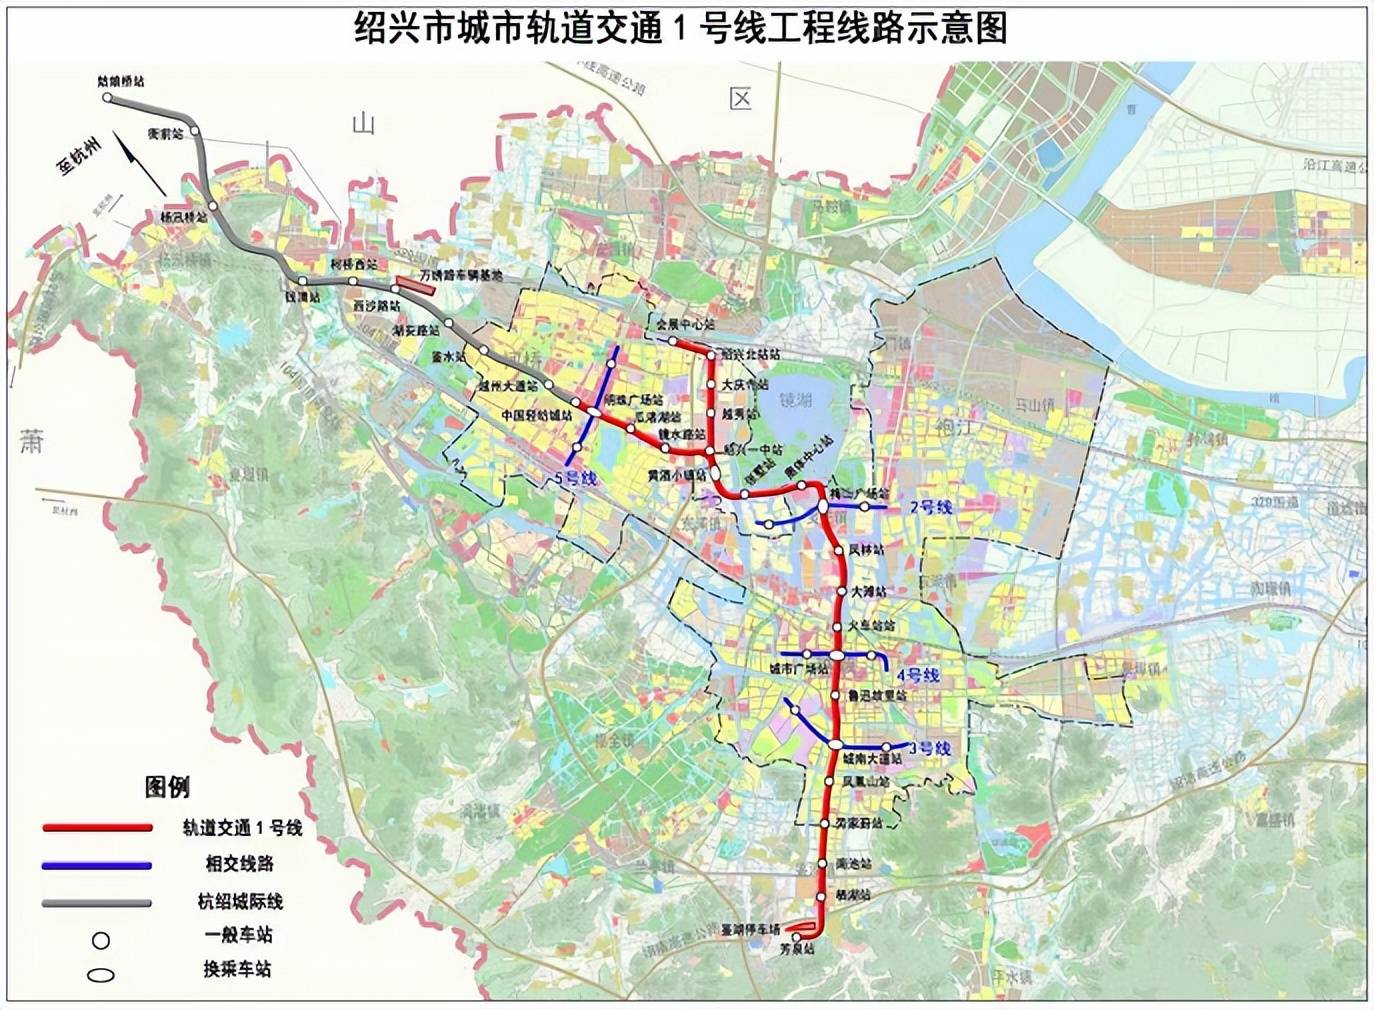 用上北京经验!绍兴地铁1号线今日开通,半小时达杭州主城区